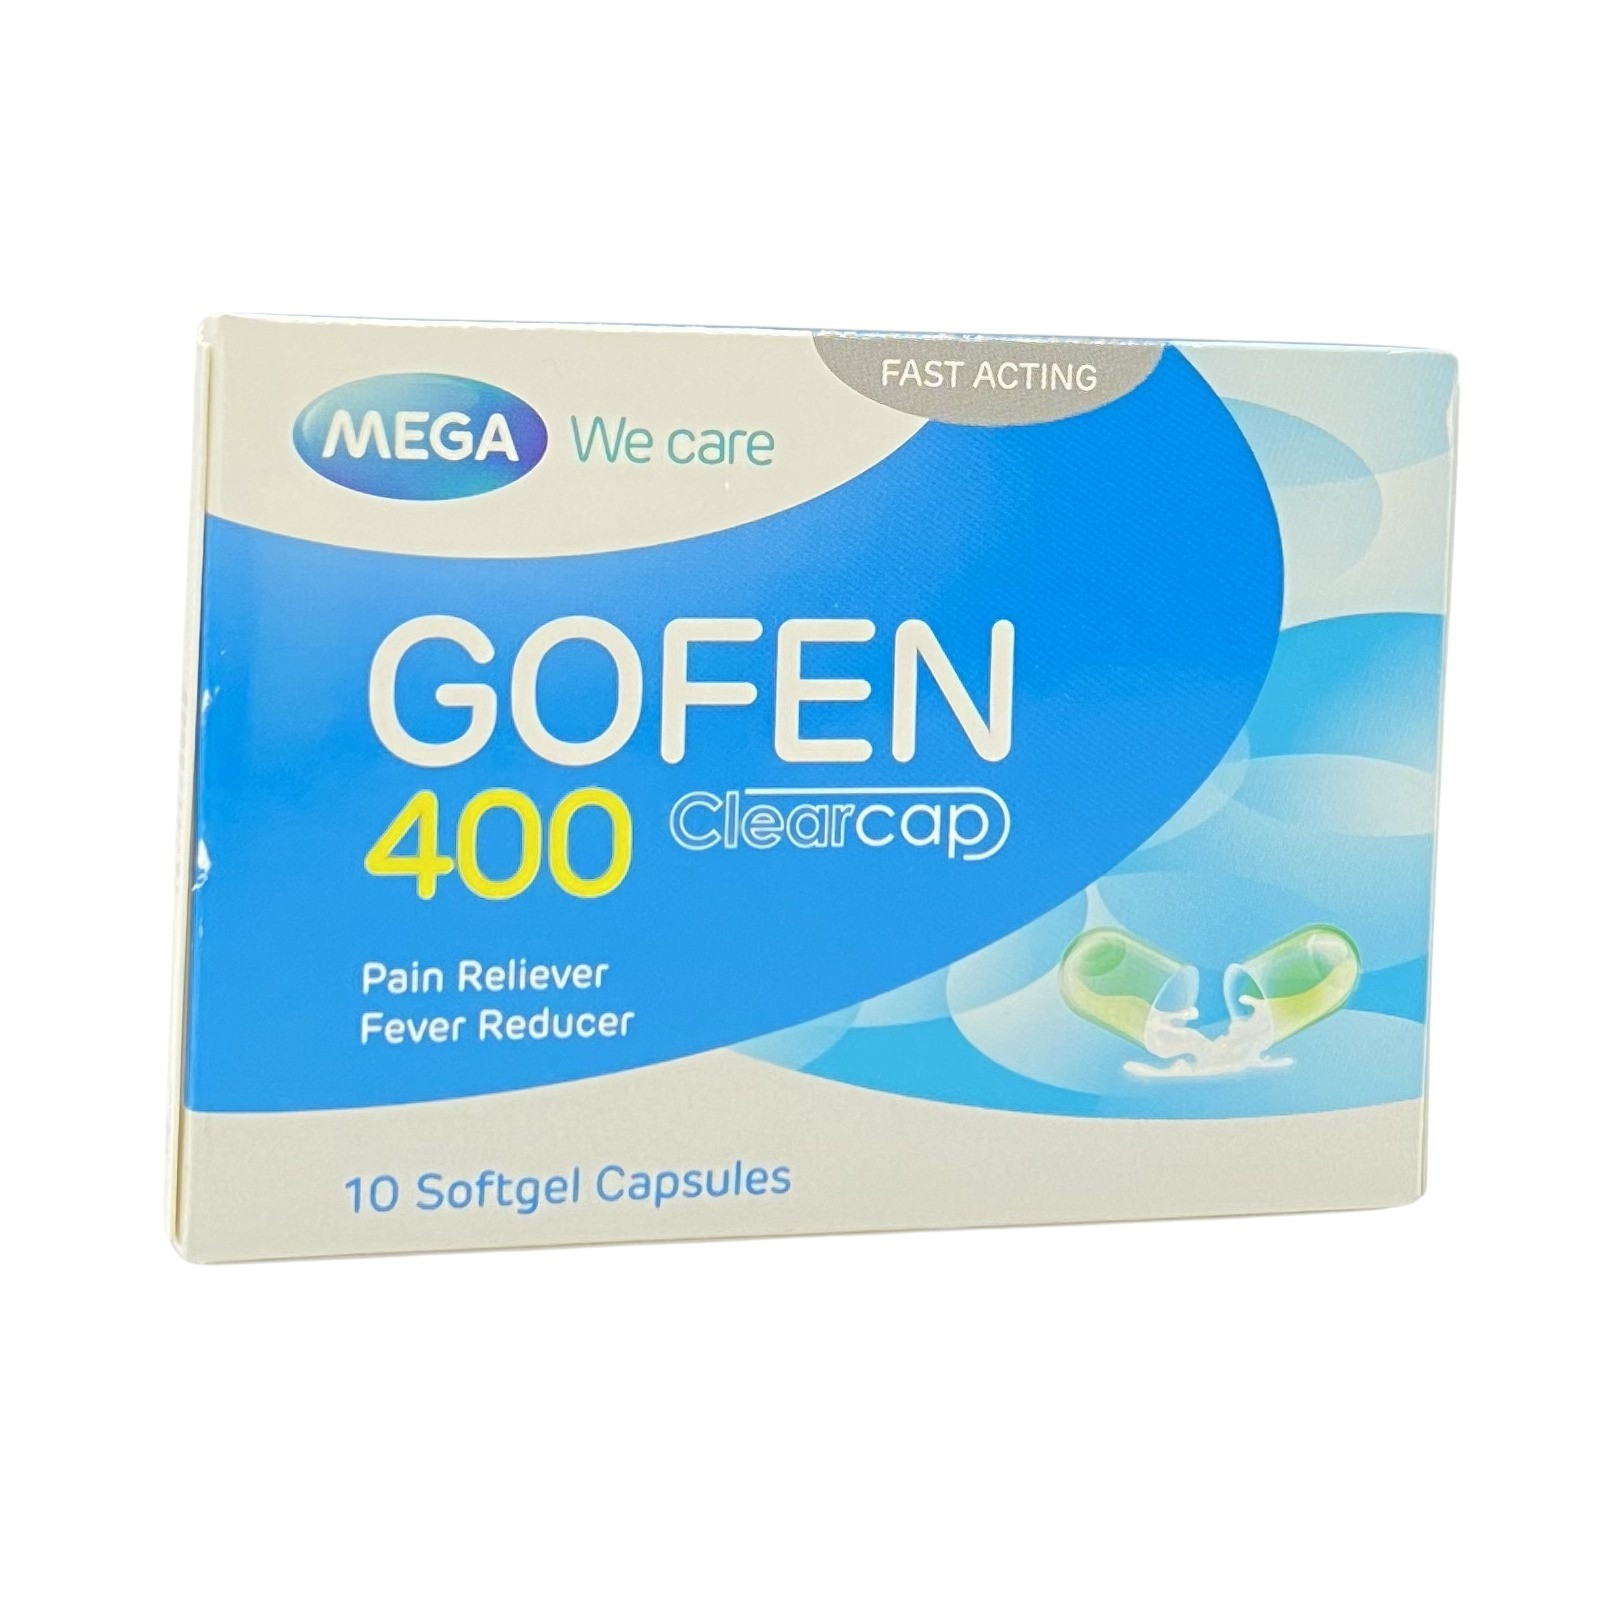 Gofen 400 (Ibuprofen 400 Mg) ยาแก้ปวด ลดไข้ ต้านการอักเสบ โกเฟน 400  ขนาดบรรจุ 10 เม็ด/แผง - สั่งยาออนไลน์